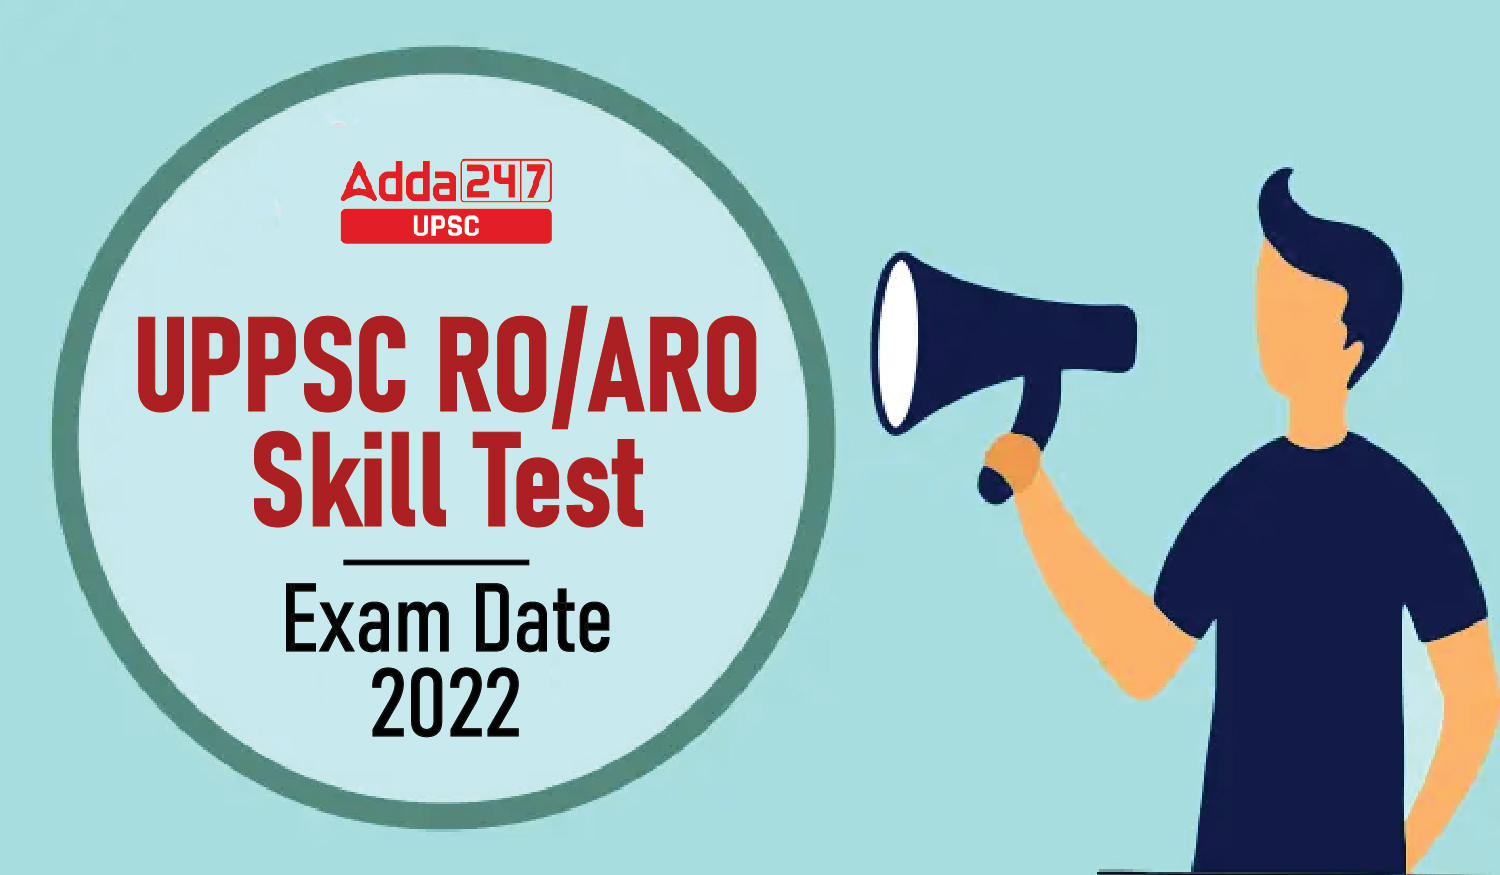 UPPSC RO/ARO Skill Test Exam Date 2022